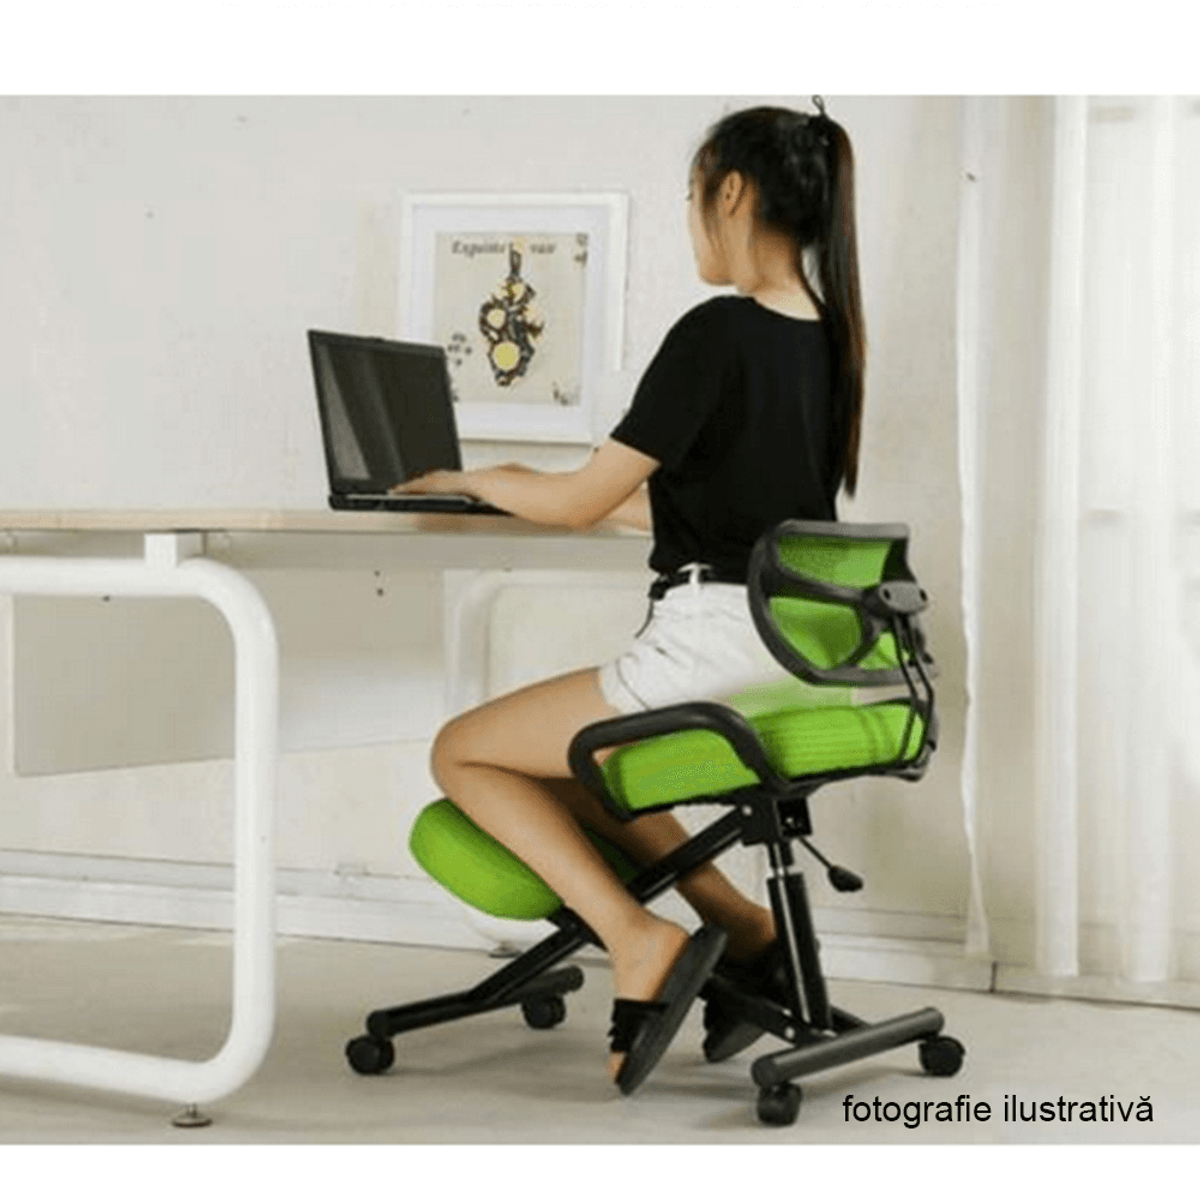 Ортопедический стул для взрослых